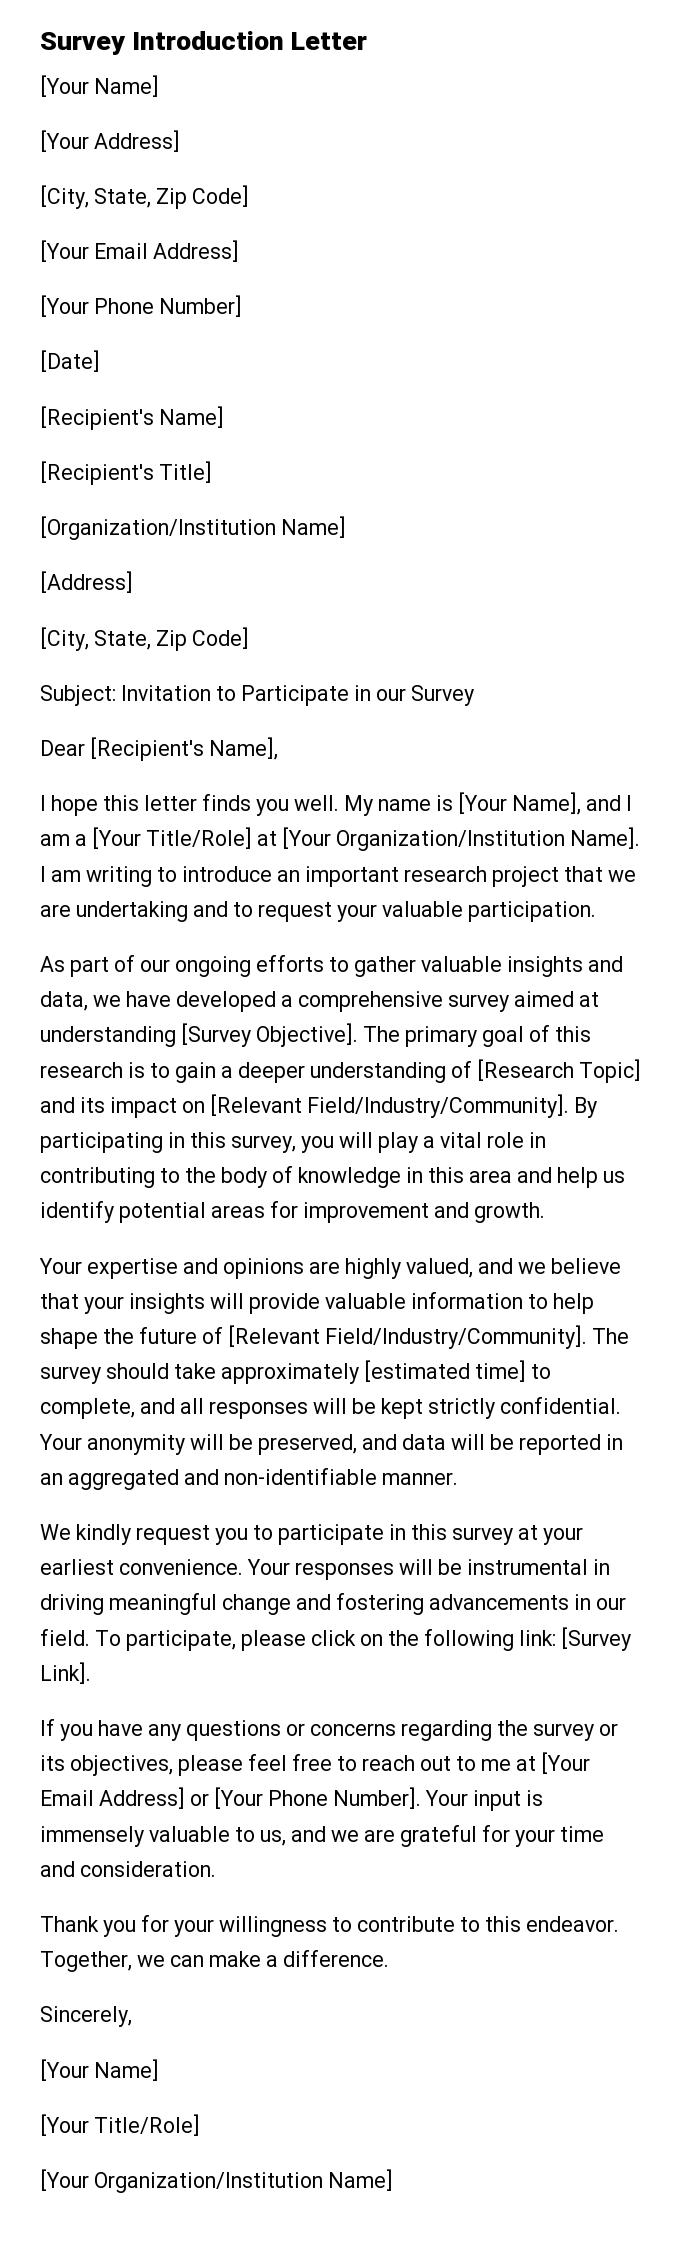 Survey Introduction Letter